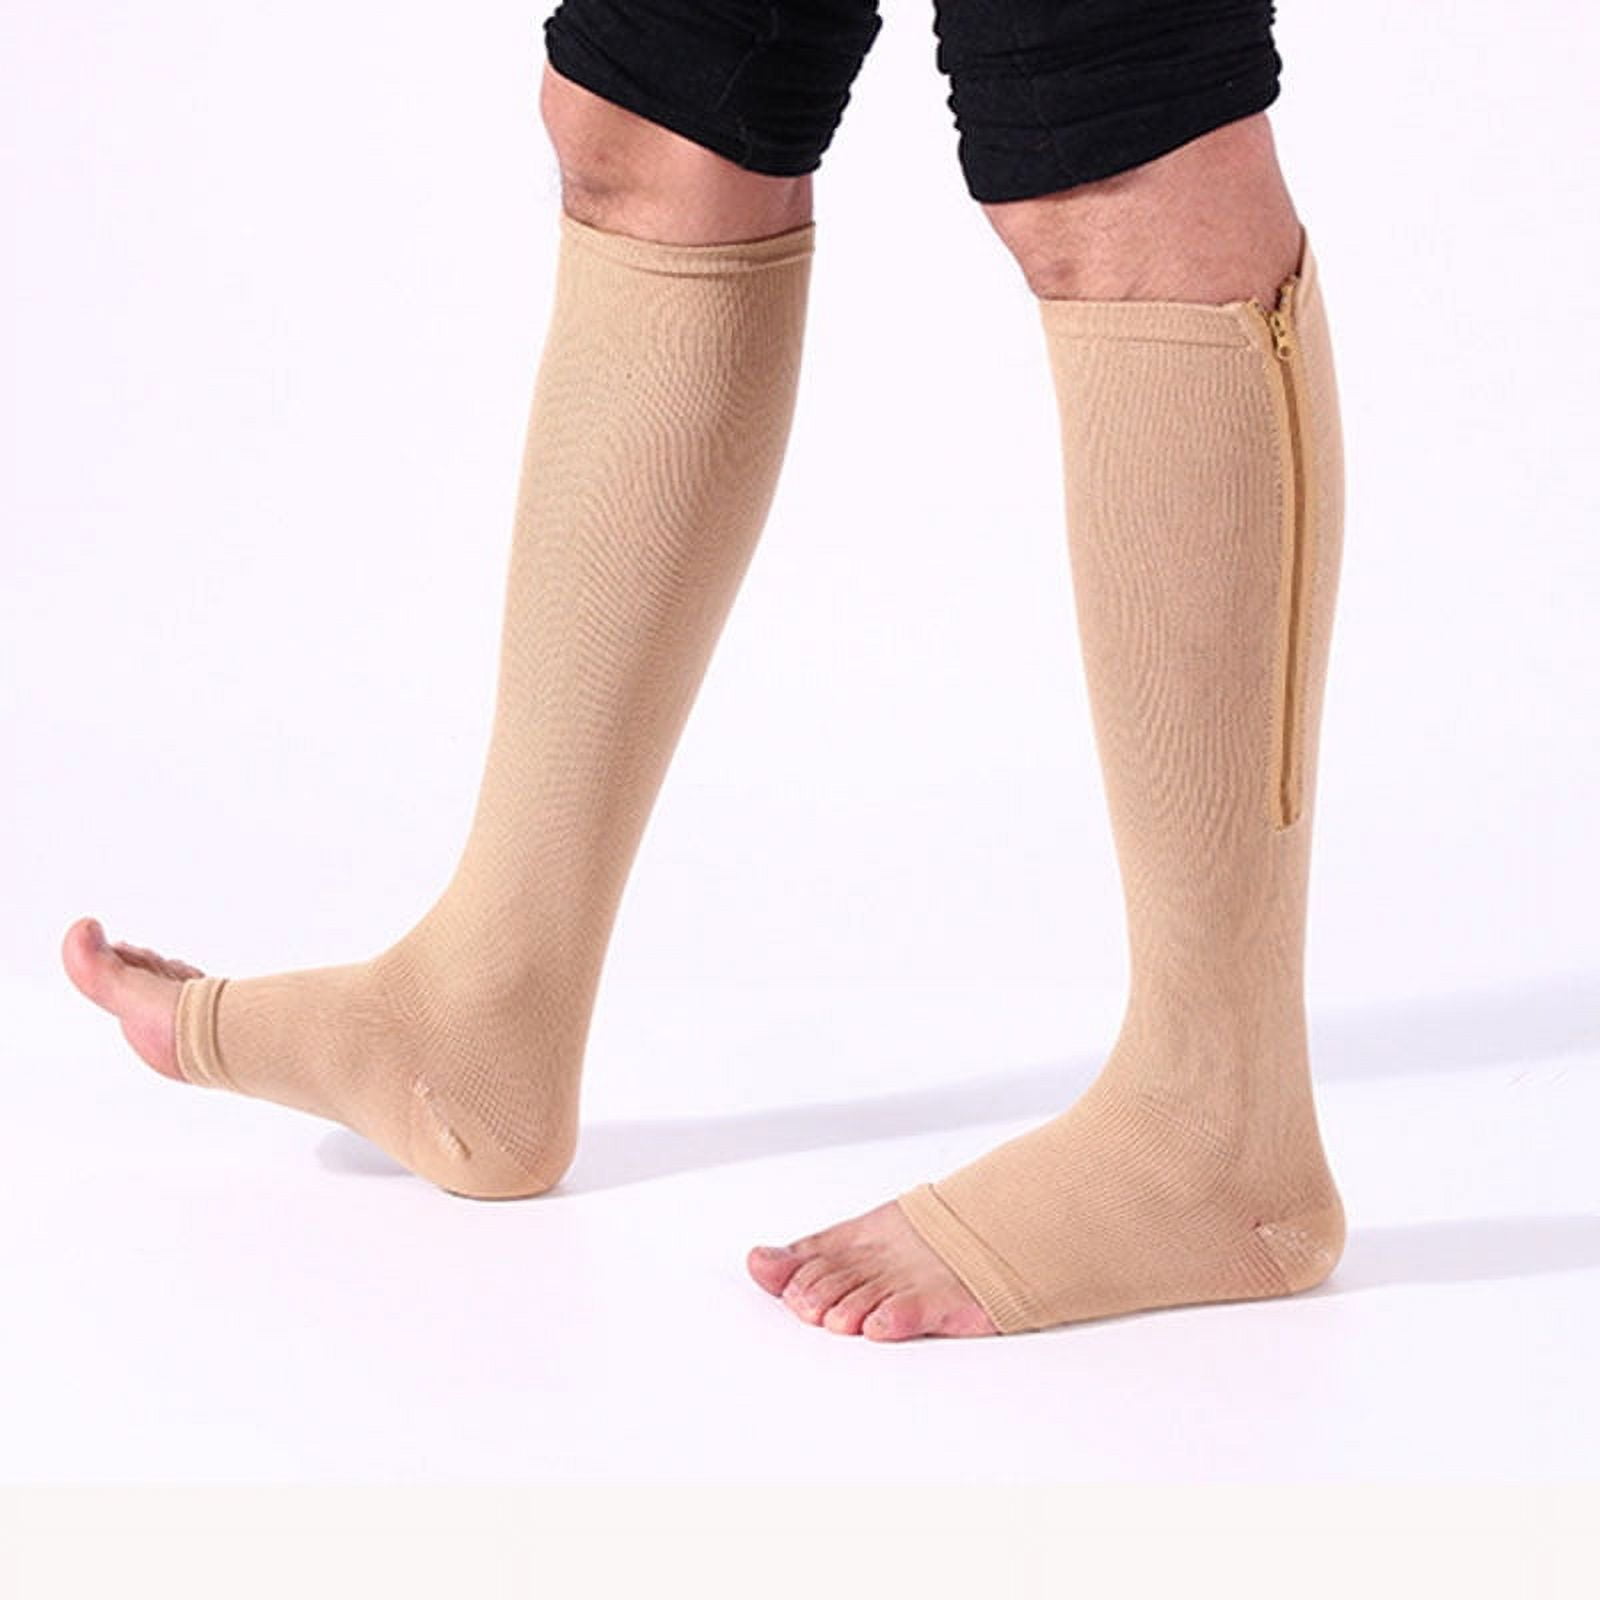  CASMON 2 Pairs Zipper Compression Socks for Women & Men, 15-20  mmHg Open Toe Knee High Support Socks for Varicose Vein Edema : Health &  Household